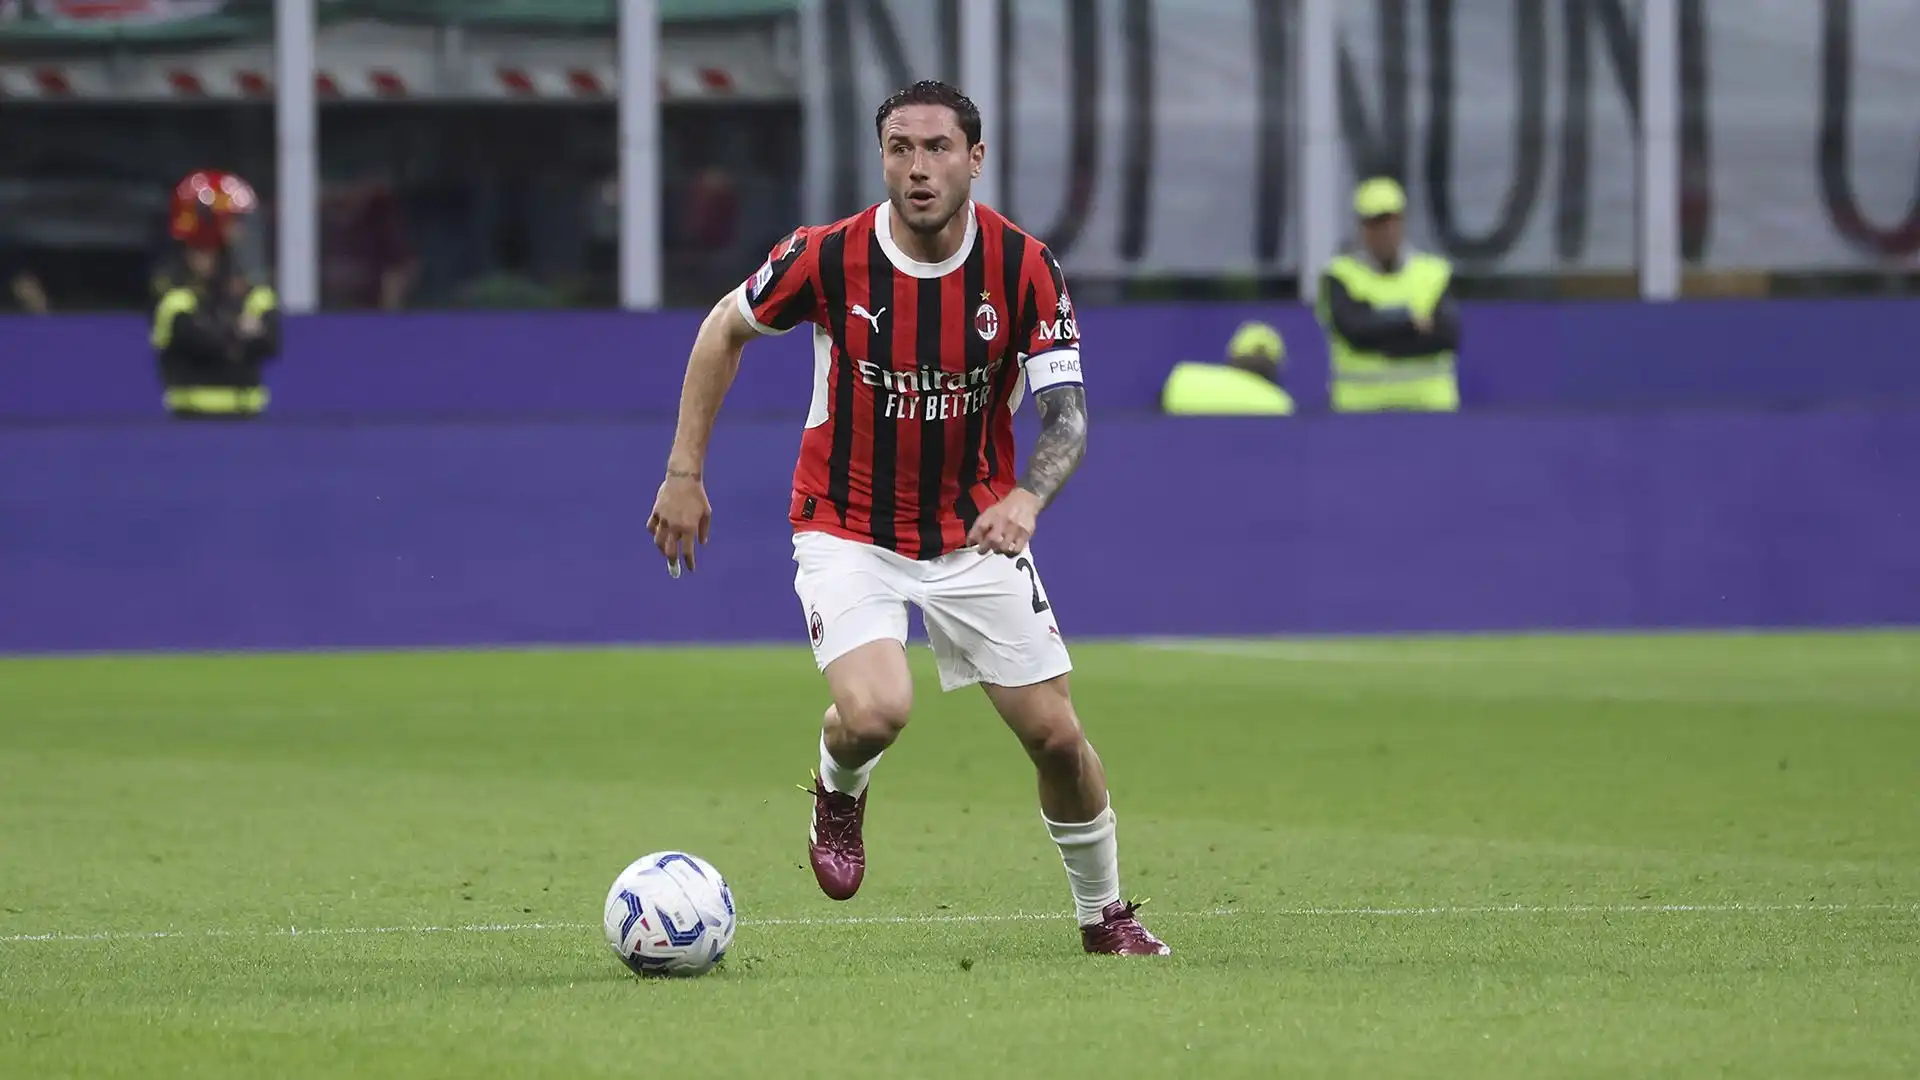 I tifosi del Milan si aspettano un calciatore di più alto livello rispetto a Calabria